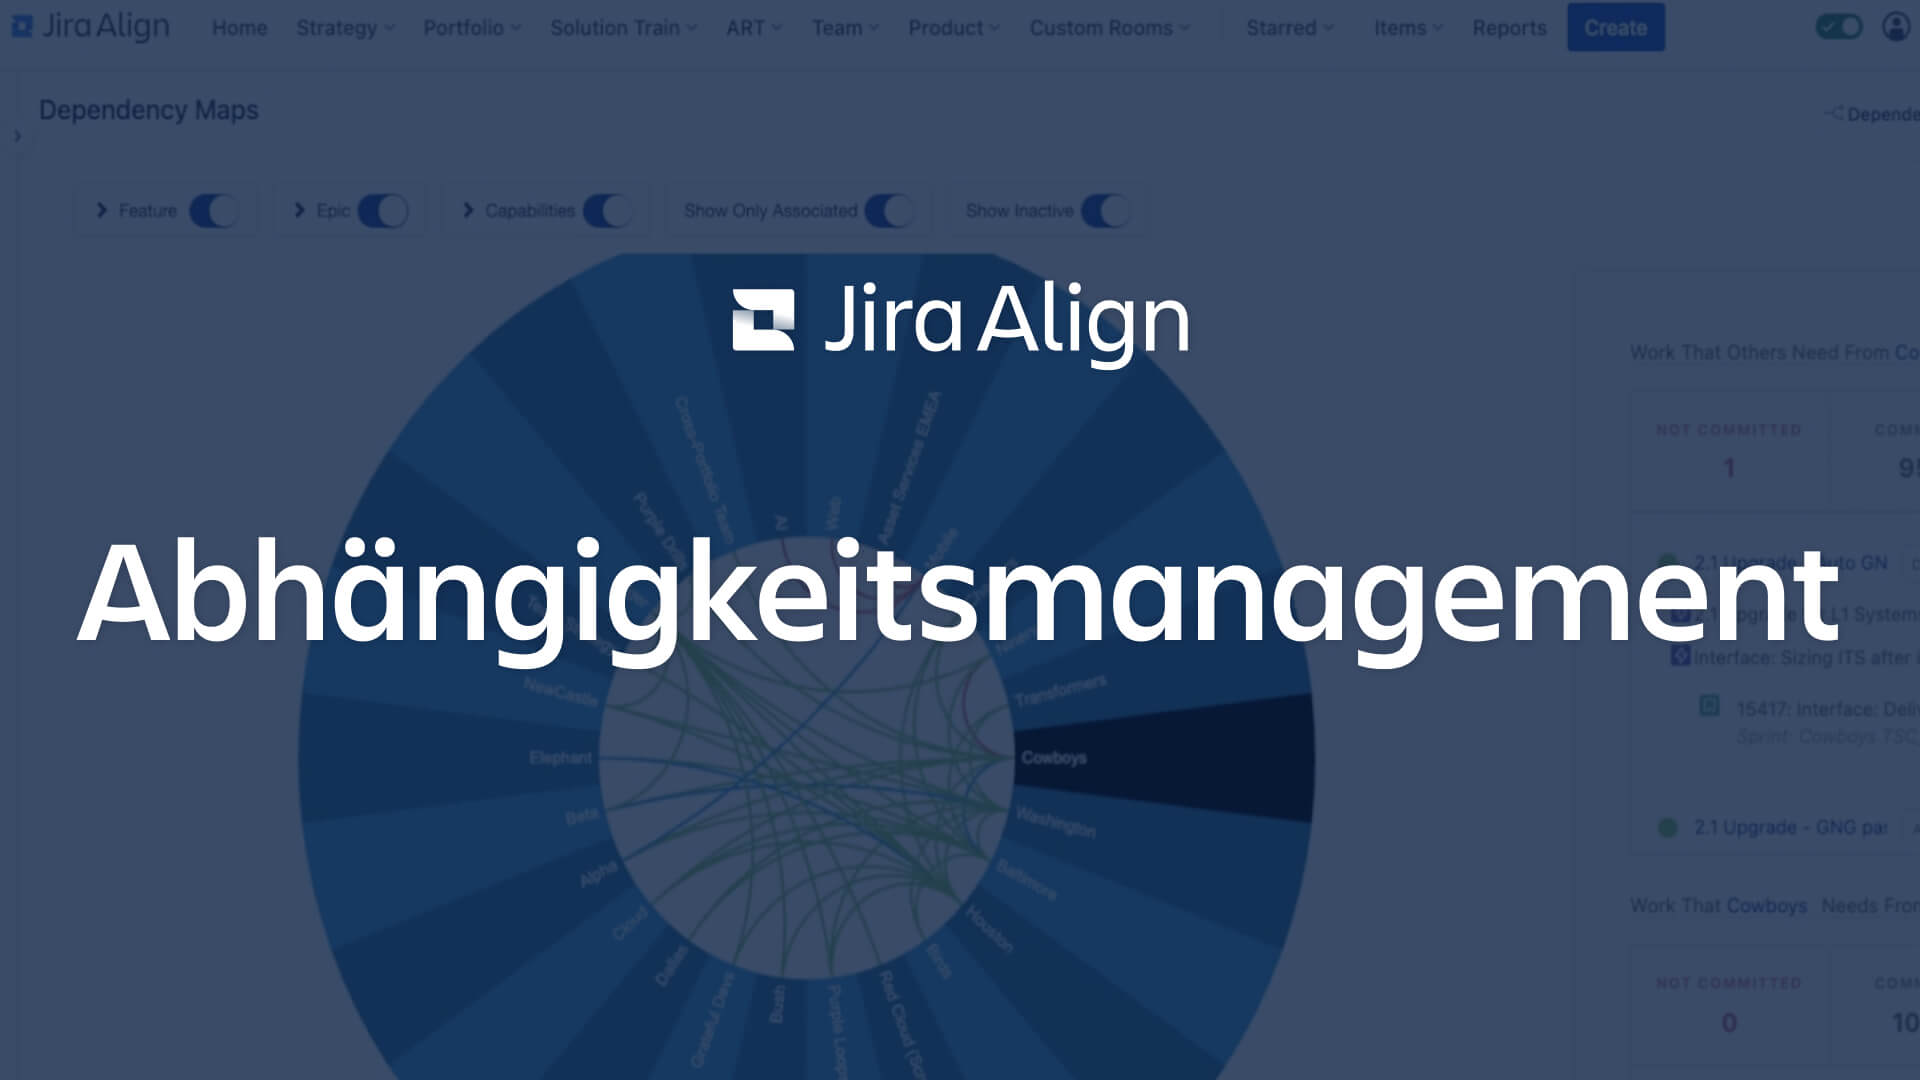 Bildschirm: Abhängigkeitsmanagement mit Jira Align